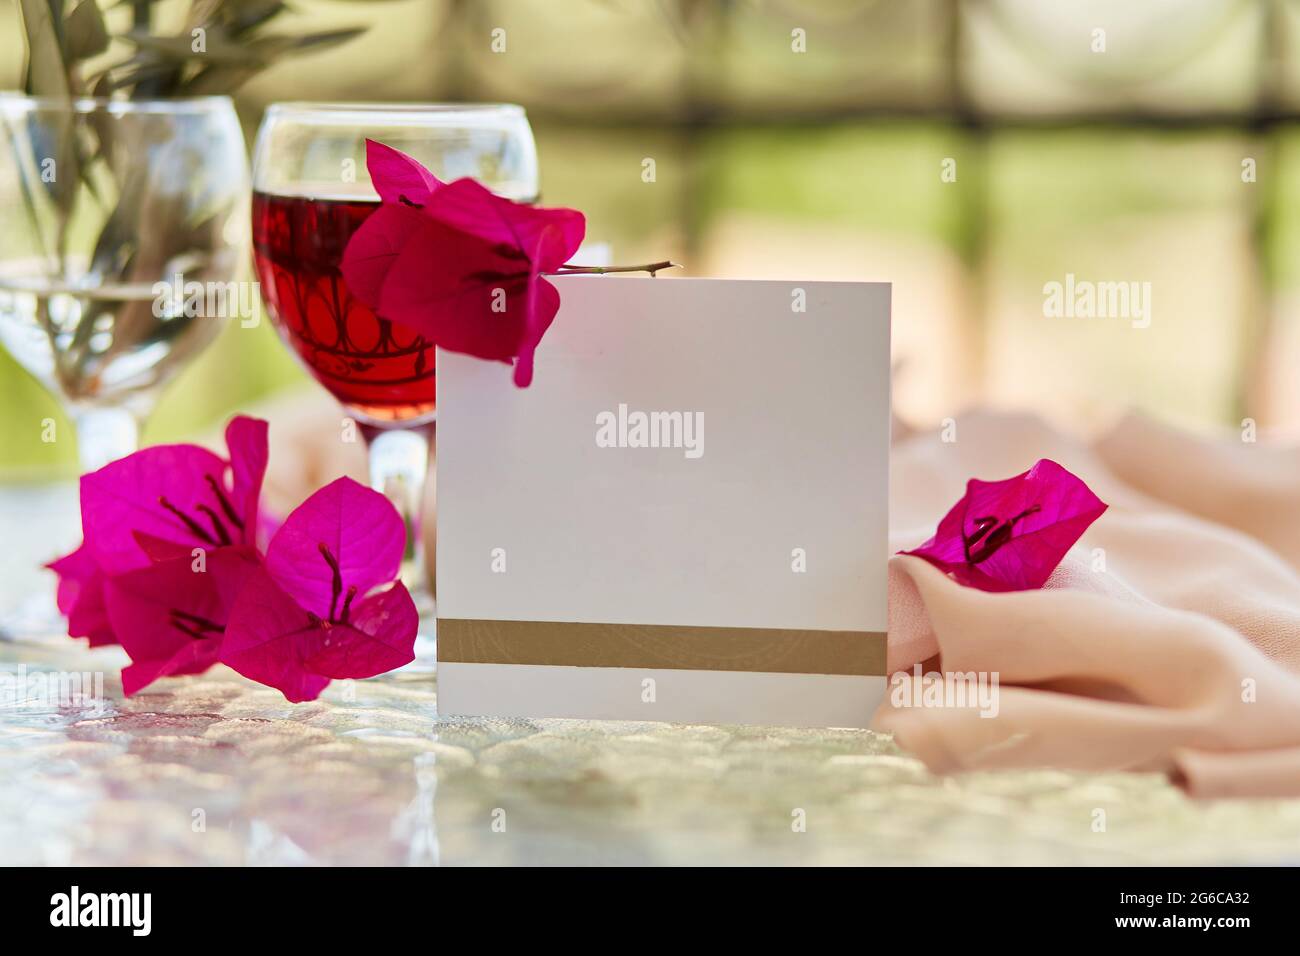 Elegantes Glas Rotwein. Dekorative rosa Blüten von Bougainvillea. Nachbau einer Postkarte oder Einladung. Festliches Weihnachtskonzept. Dekorative grüne Blätter und Zweig des Olivenbaums im Glas. Stockfoto